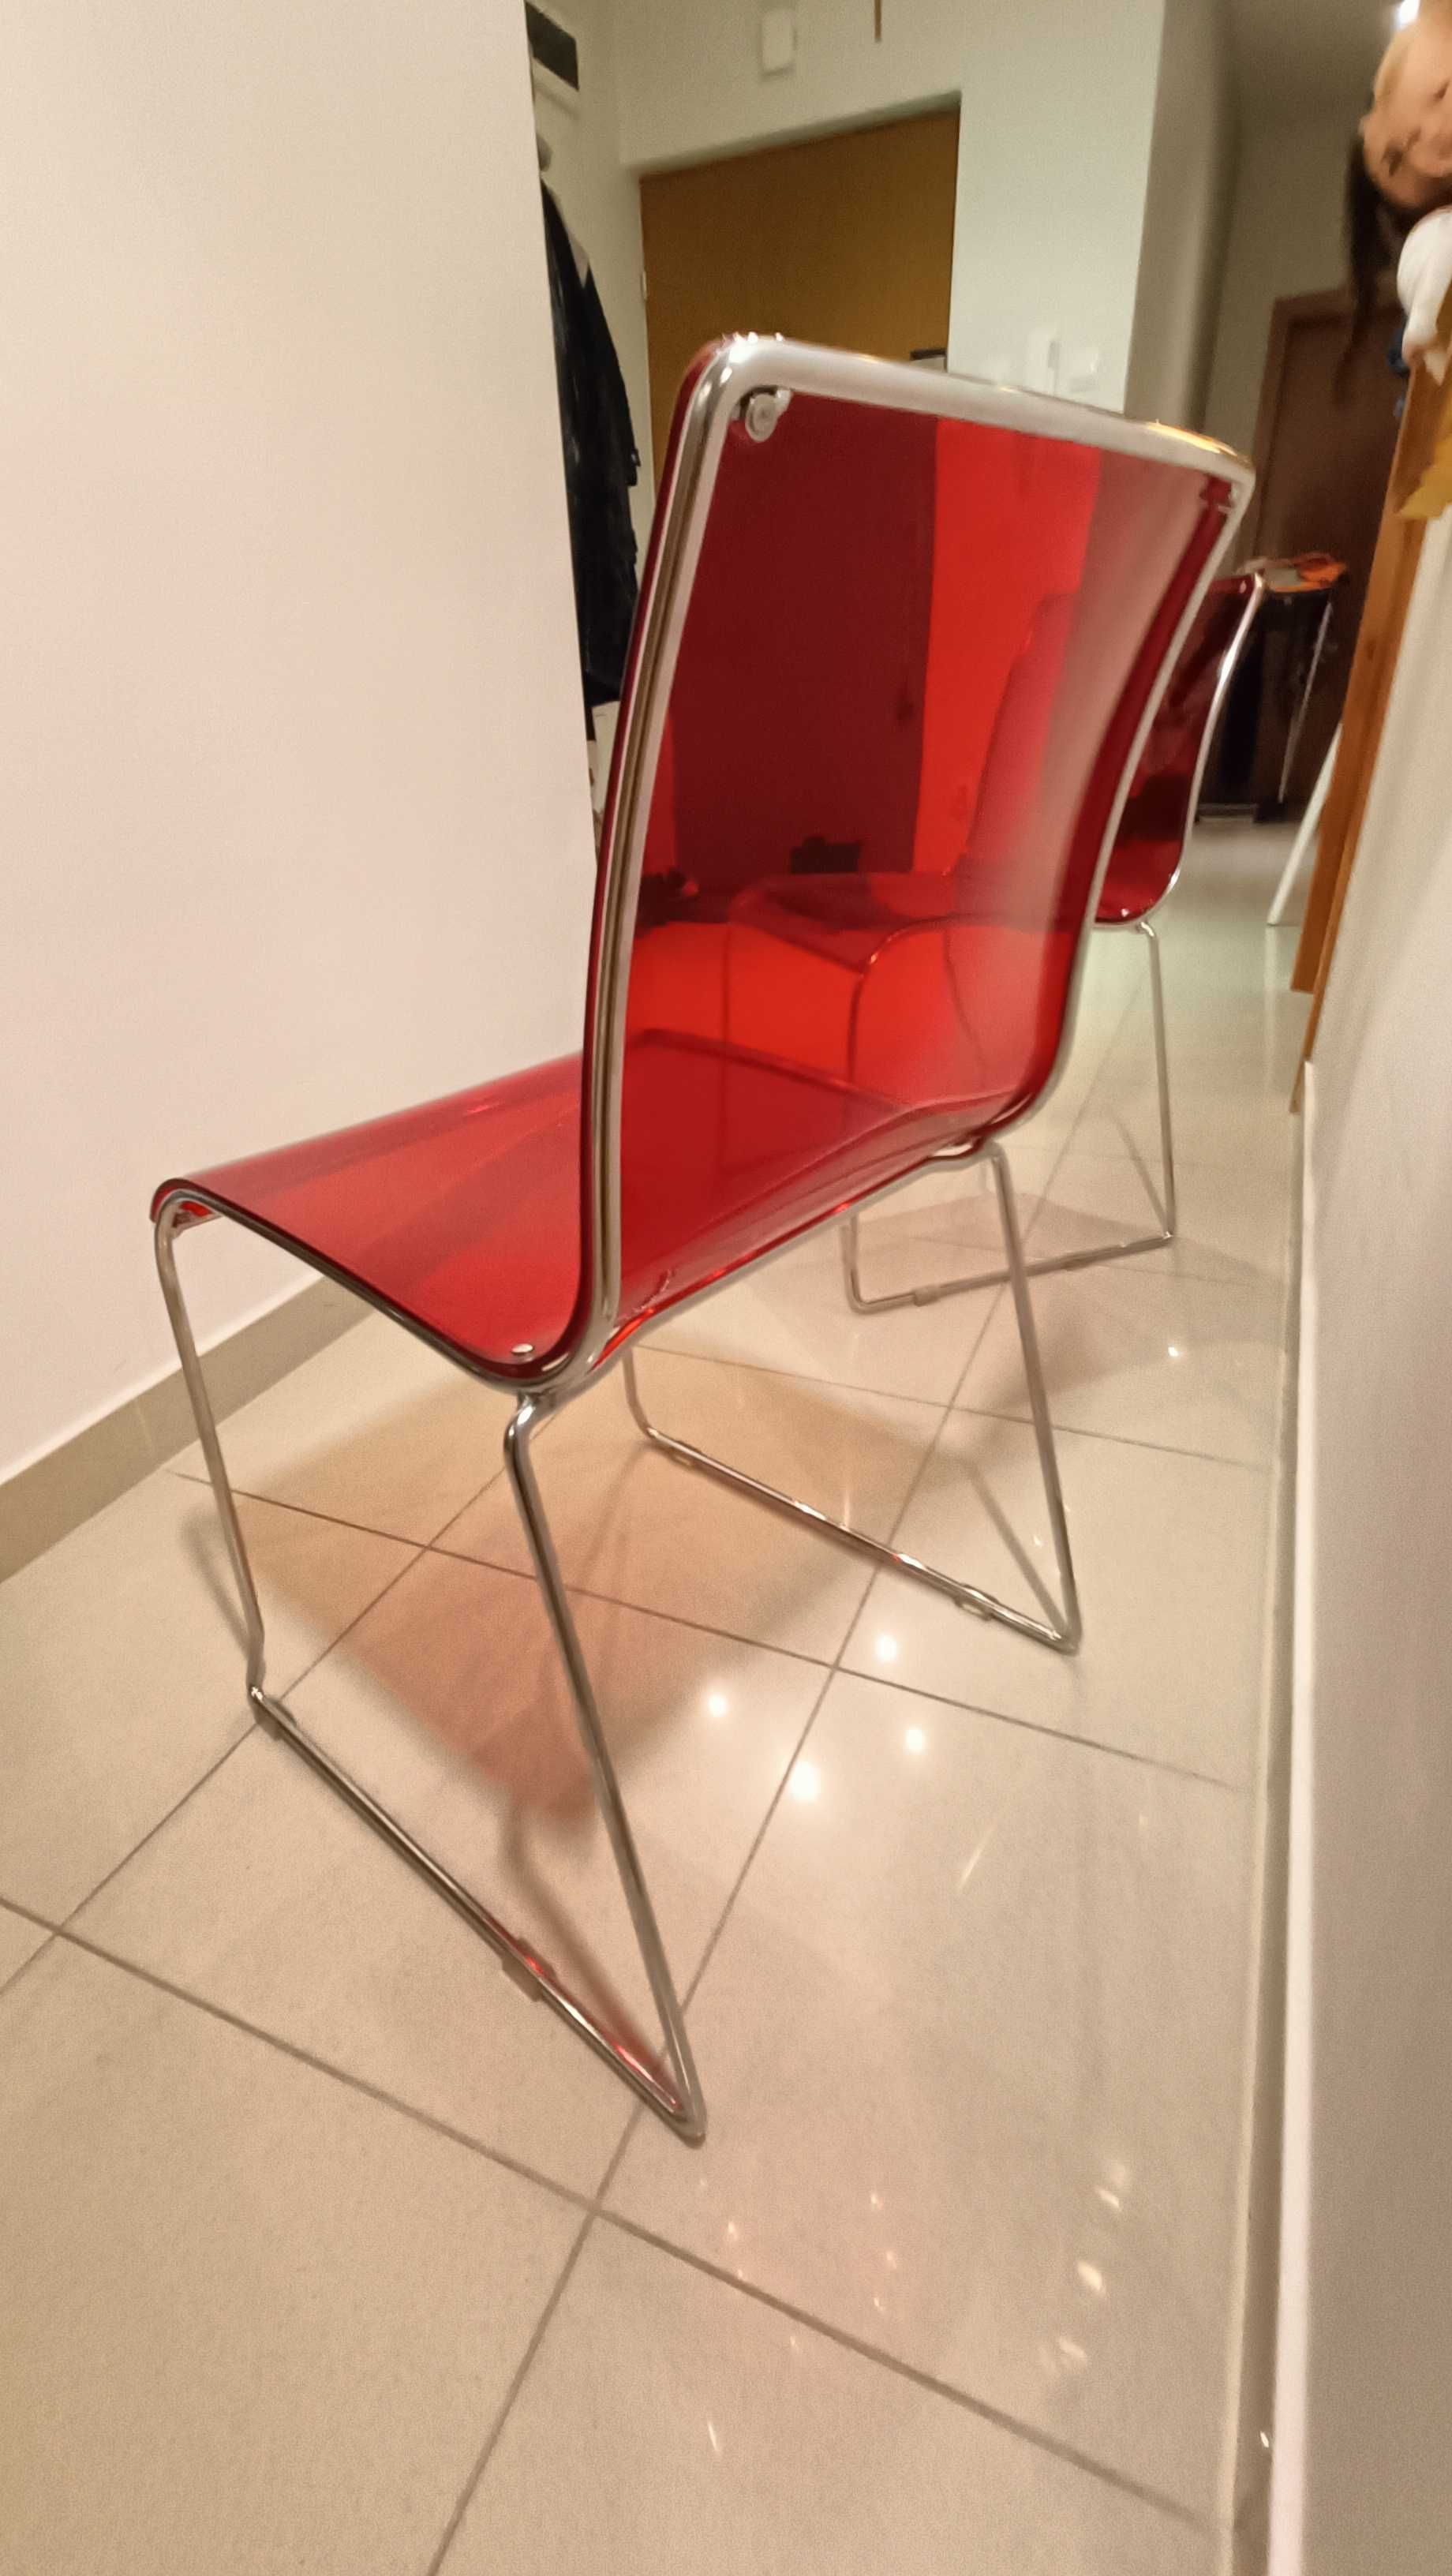 Krzesła Calligaris Irony 2szt włoski Design